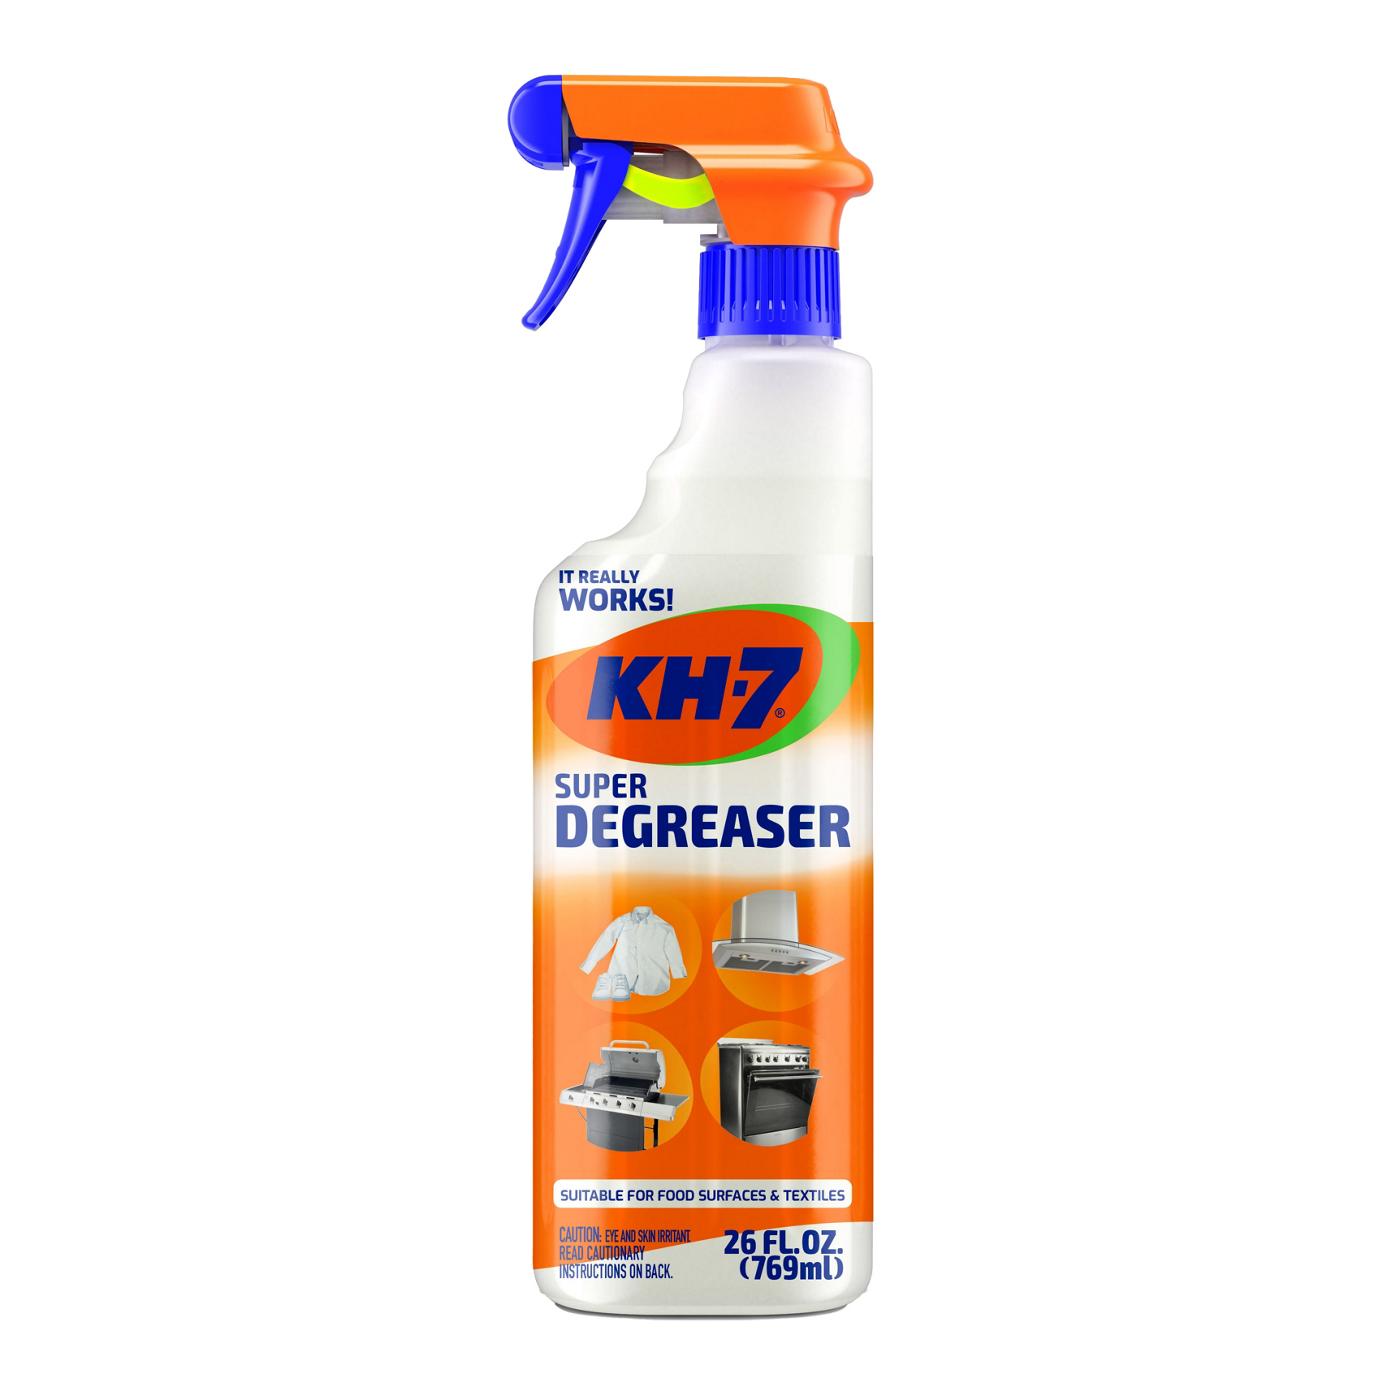 KH-7 Super Degreaser; image 1 of 8